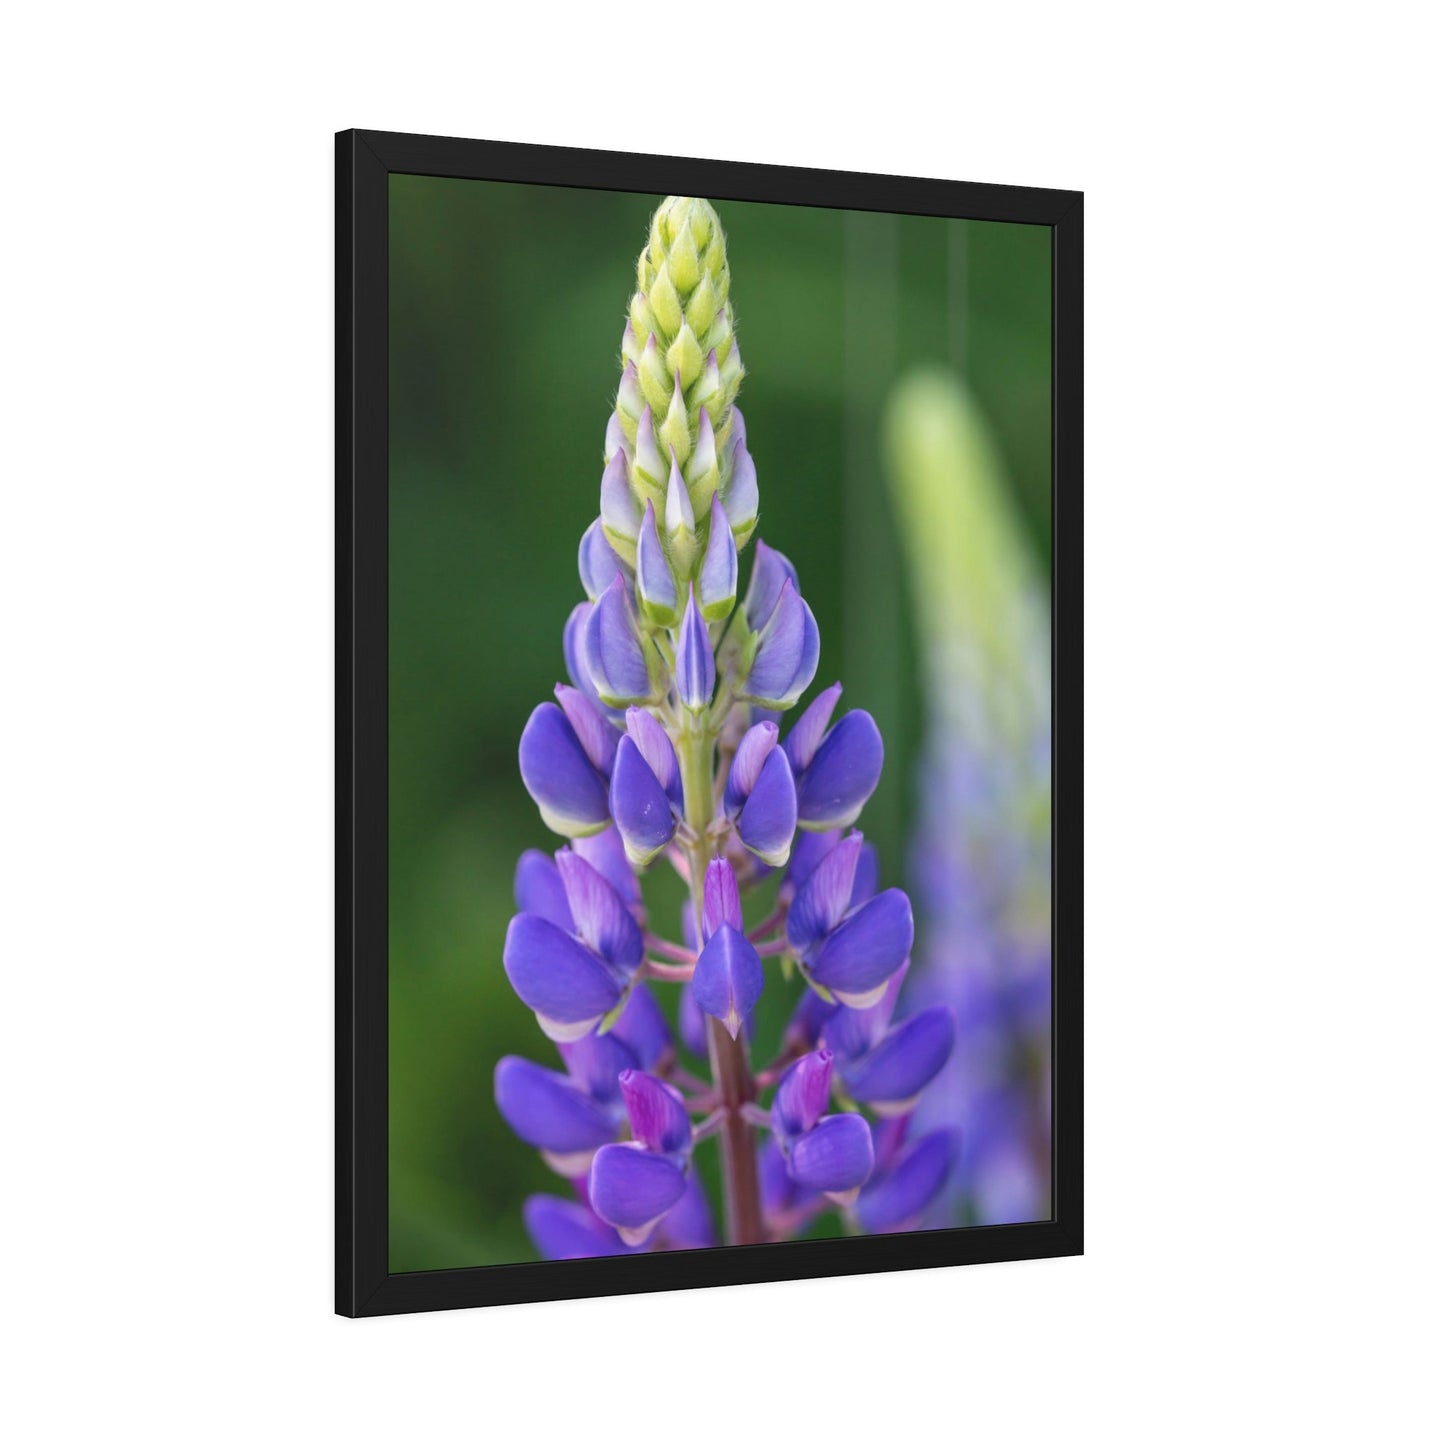 Bluebonnet Garden: Framed Canvas and Print with Stunning Botanical Art